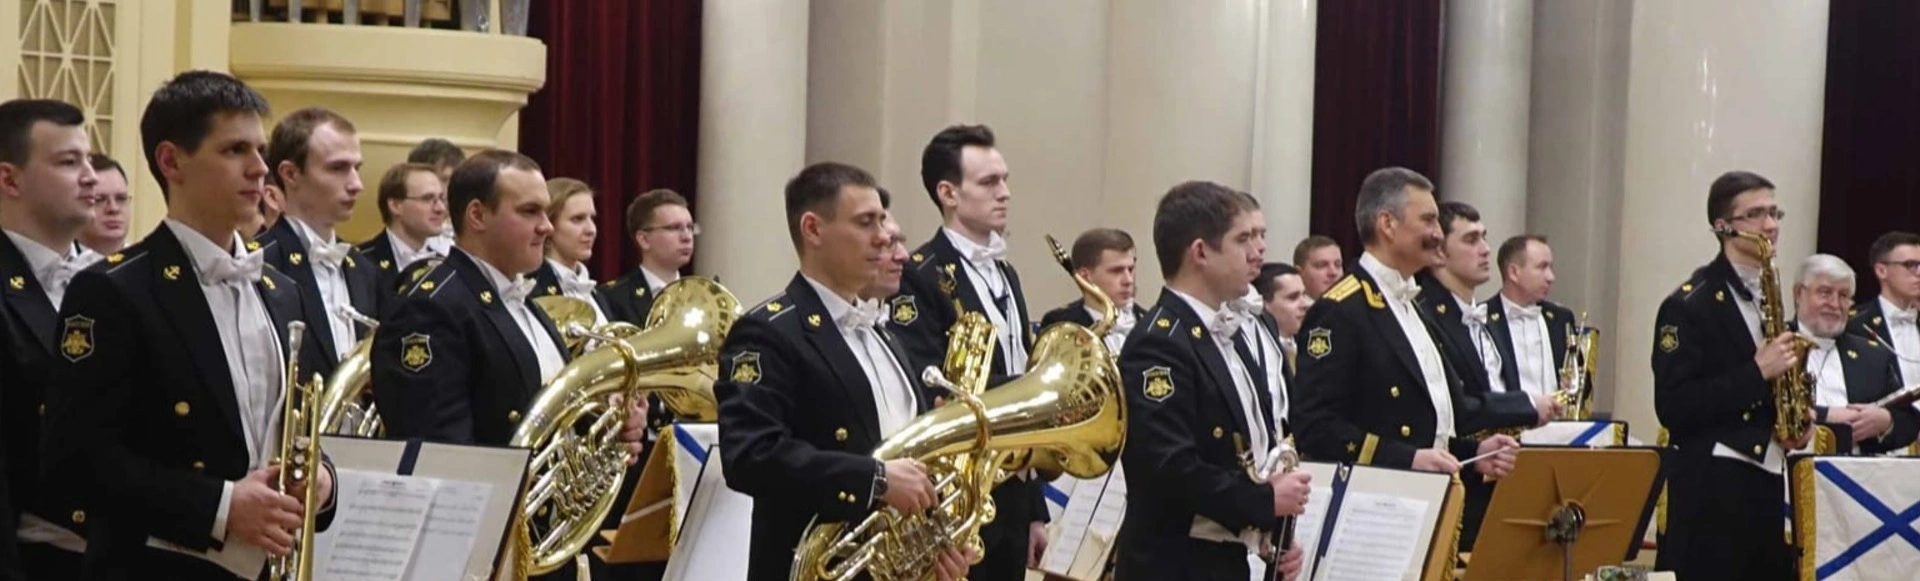 Центральный концертный образцовый оркестр имени Н. А. Римского-Корсакова